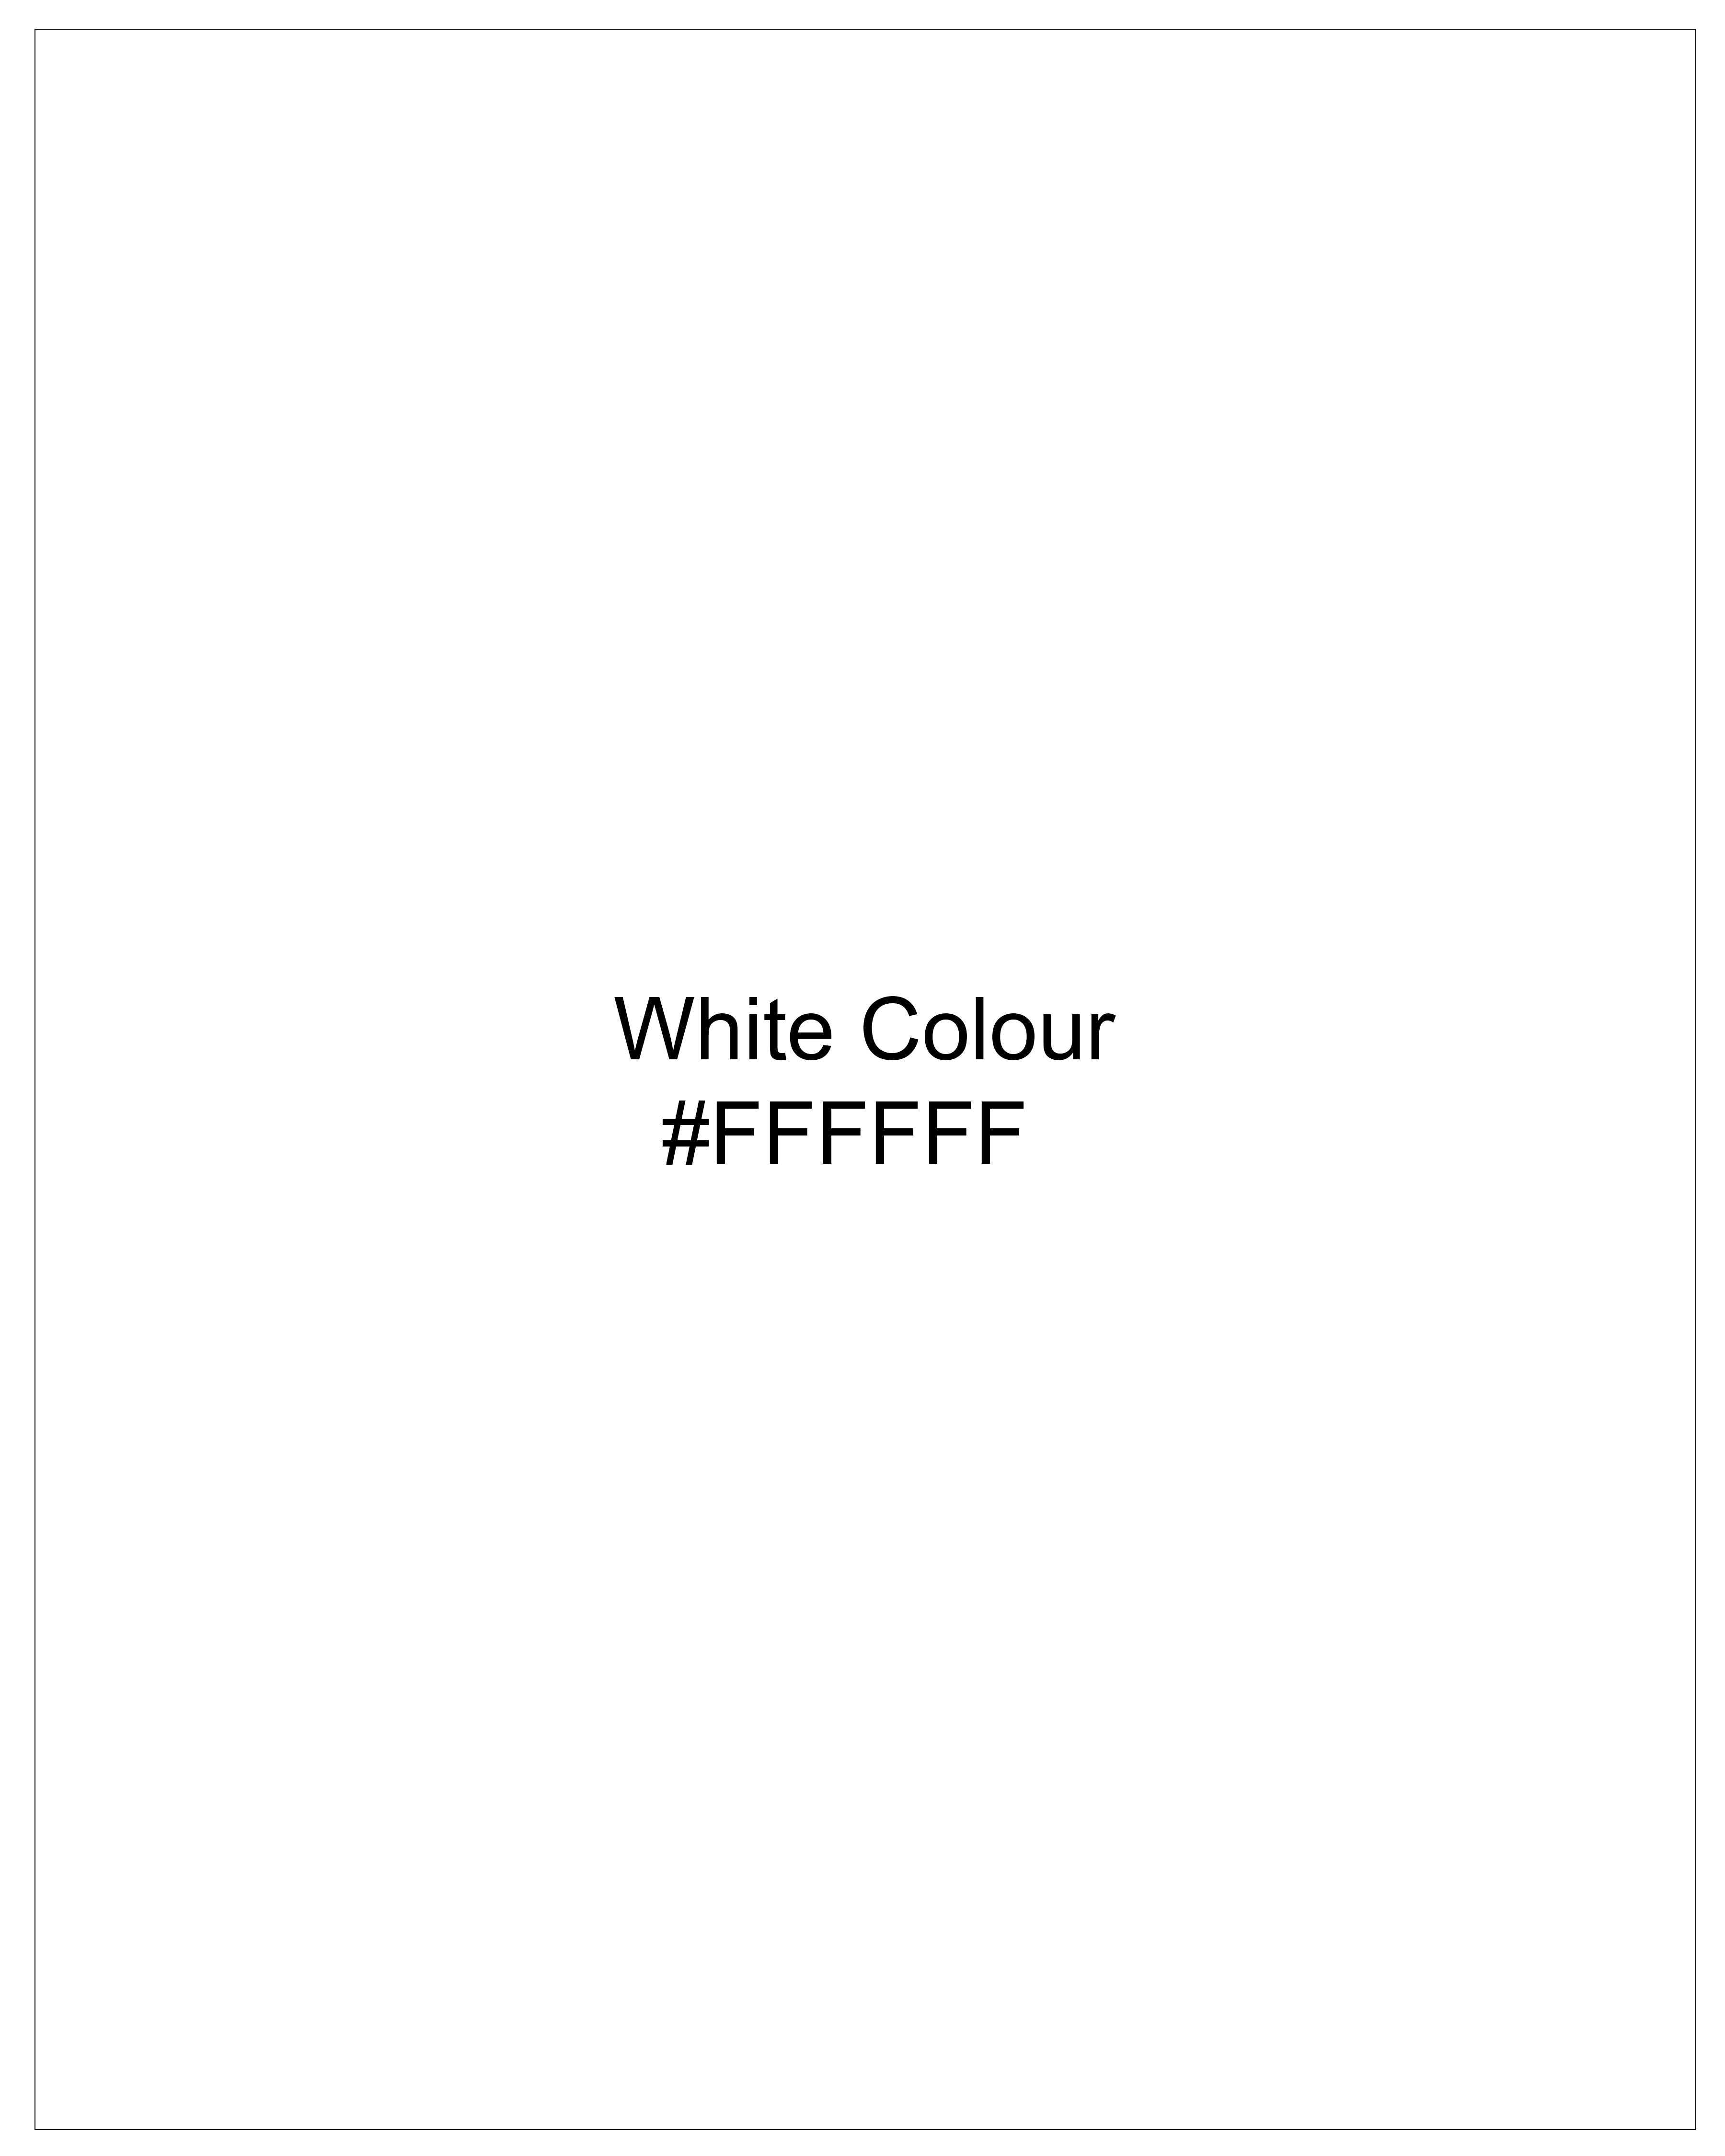 Bright White Dobby Textured Premium Giza Cotton Shirt 8987-CP-38, 8987-CP-H-38, 8987-CP-39, 8987-CP-H-39, 8987-CP-40, 8987-CP-H-40, 8987-CP-42, 8987-CP-H-42, 8987-CP-44, 8987-CP-H-44, 8987-CP-46, 8987-CP-H-46, 8987-CP-48, 8987-CP-H-48, 8987-CP-50, 8987-CP-H-50, 8987-CP-52, 8987-CP-H-52